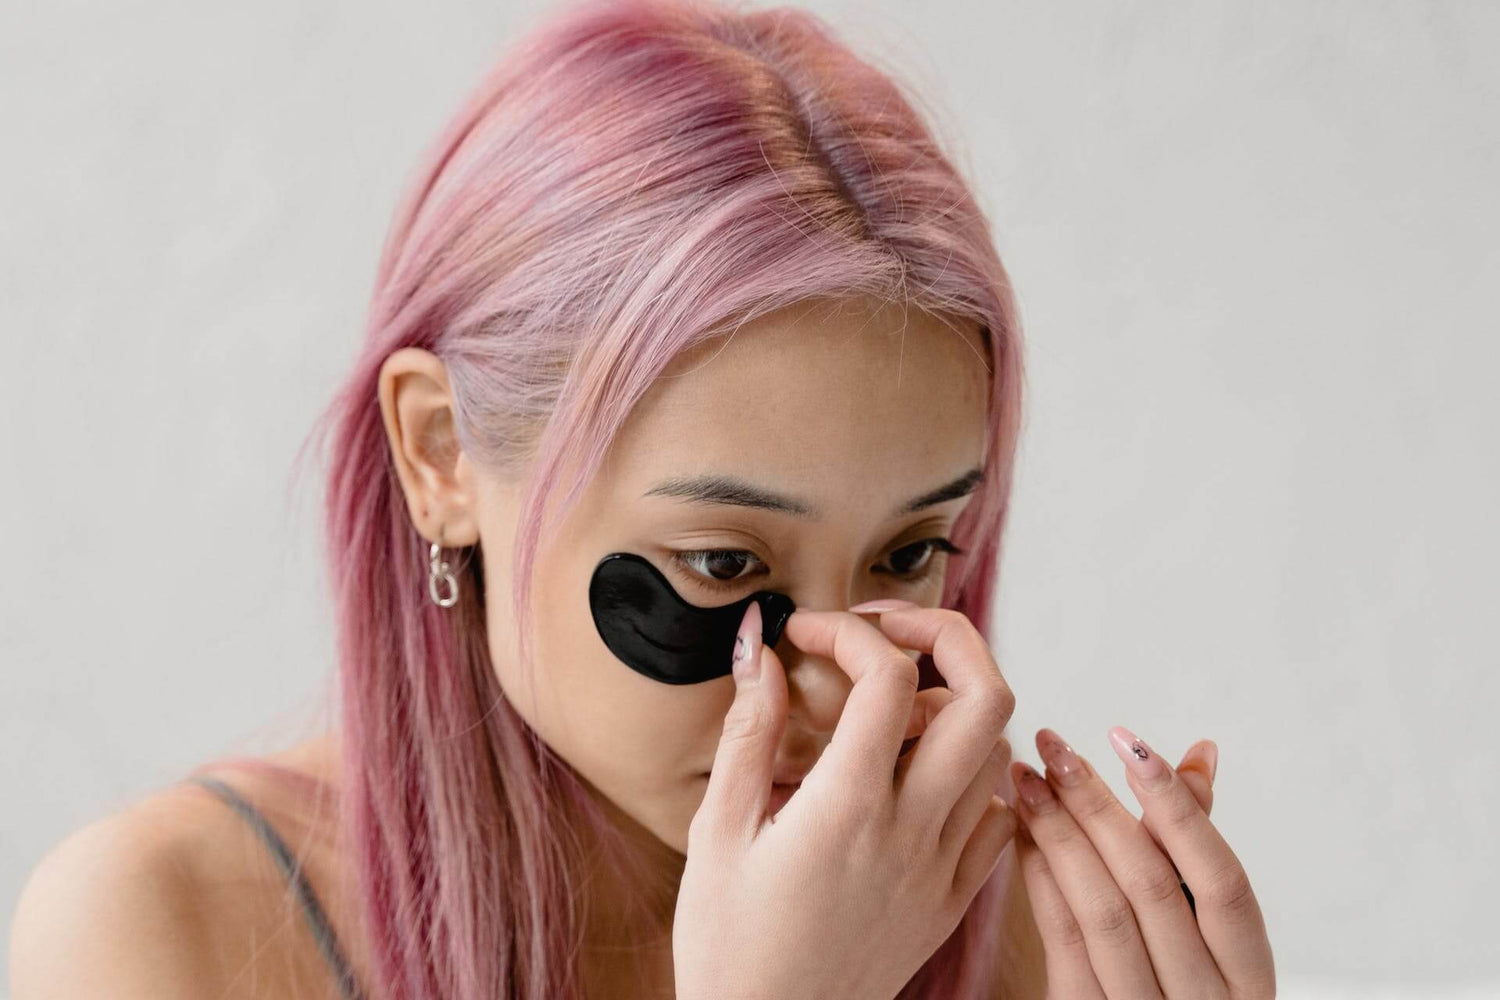 Ragazza dai capelli rosa applica un patch occhi sul viso, come step della skincare routine coreana